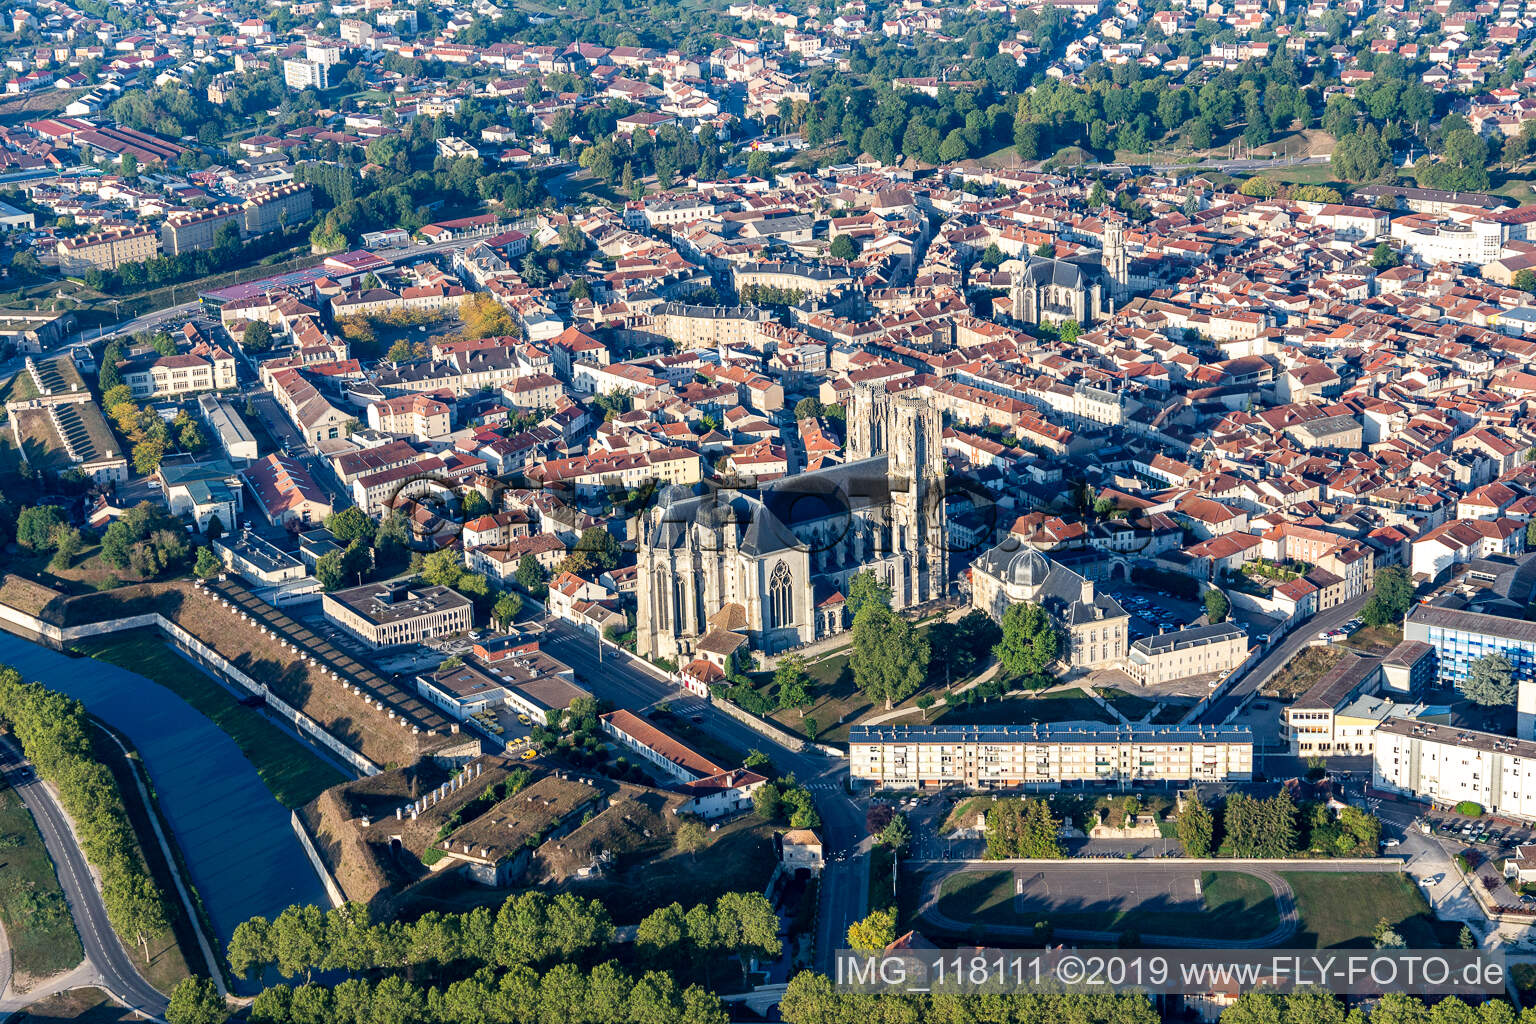 Photographie aérienne de Cathédrale Saint-Étienne de Toul à Toul dans le département Meurthe et Moselle, France